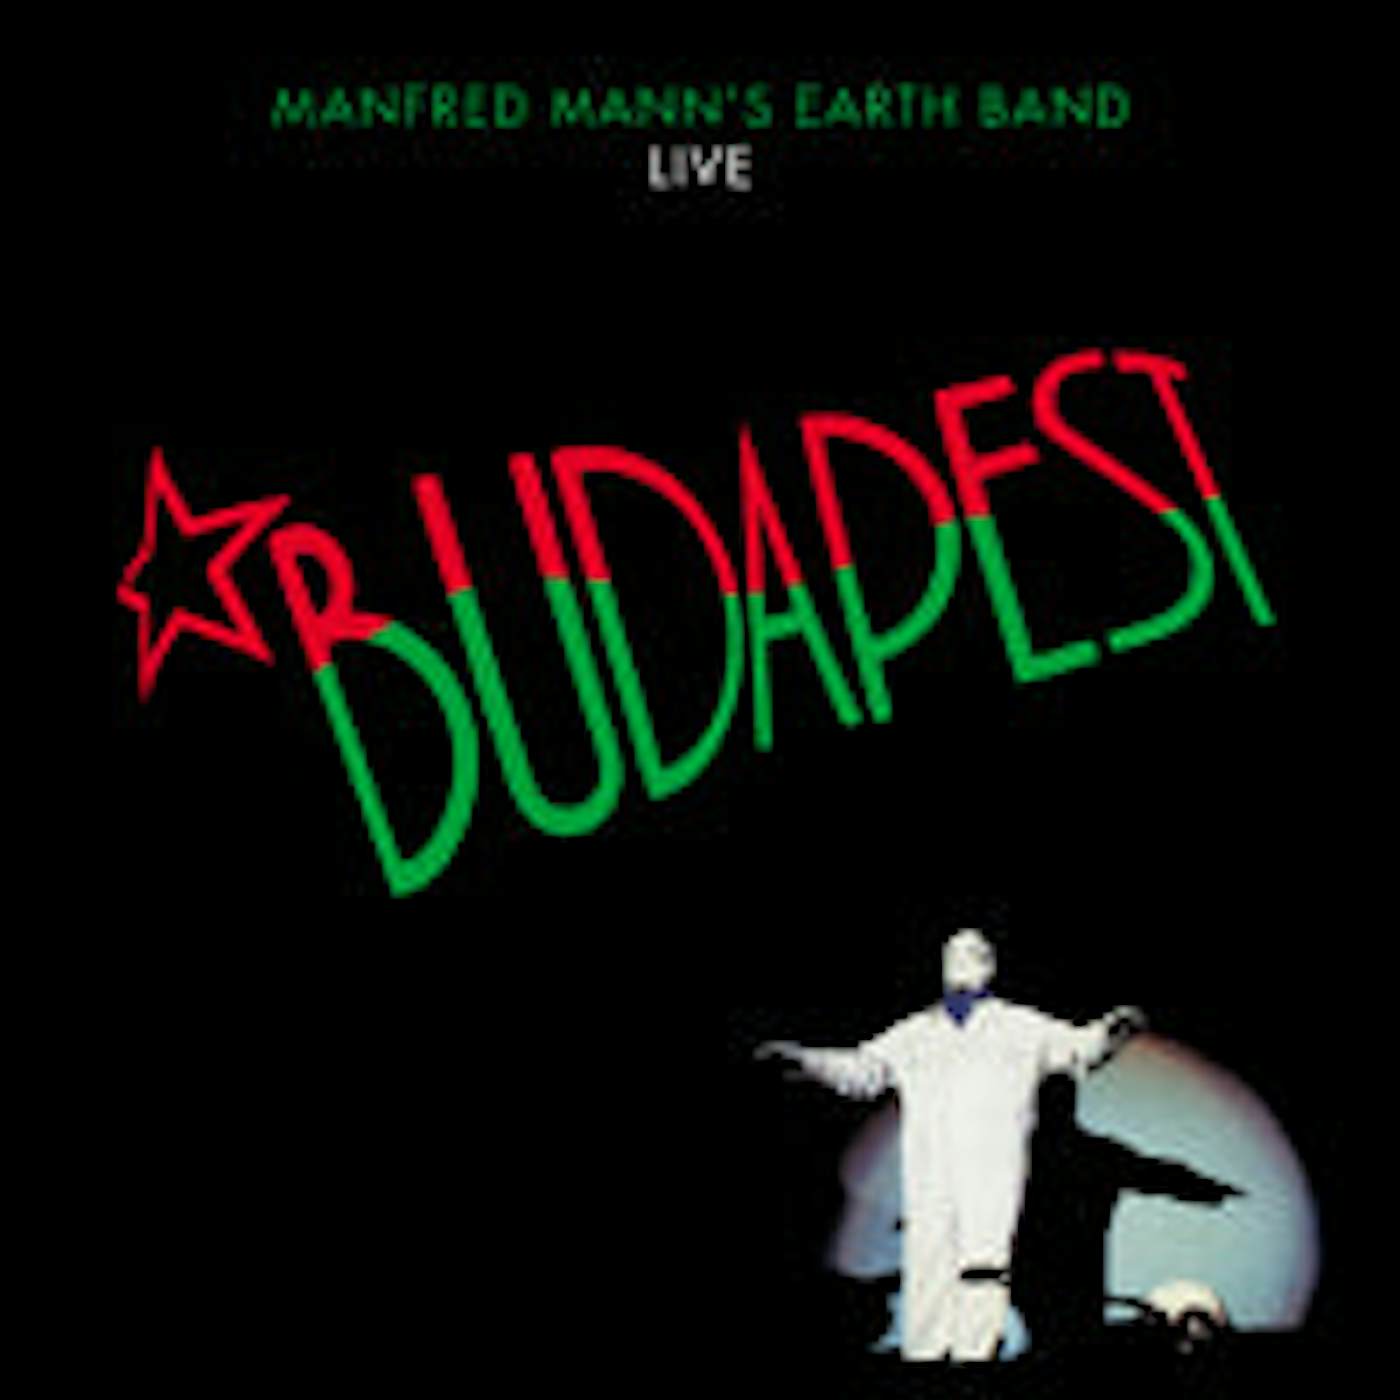 Manfred Mann'S Earth Band LP - Budapest Live (Vinyl)